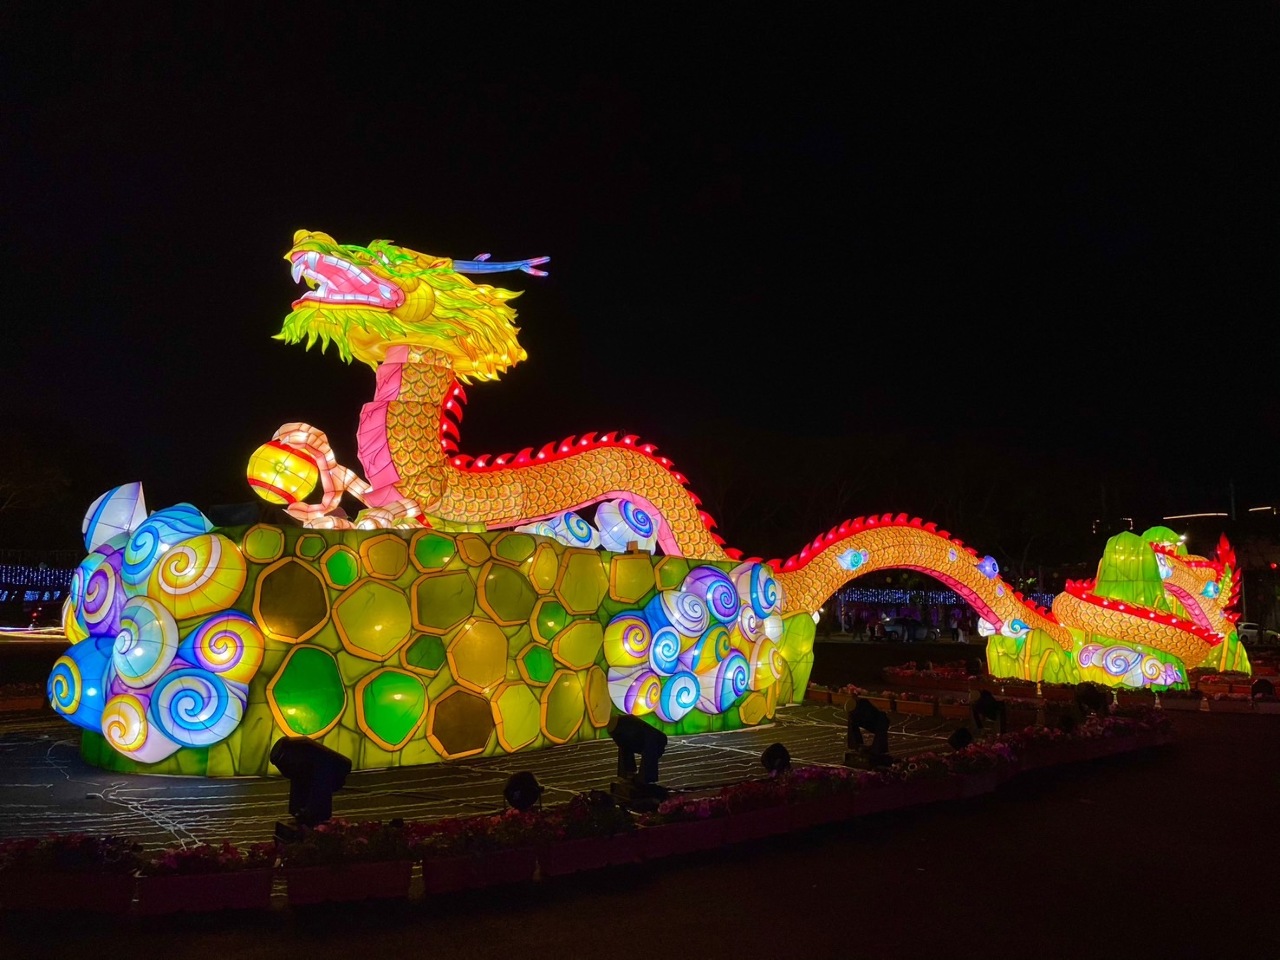 元宵節 匈牙利旅遊雜誌專文介紹台灣花燈文化